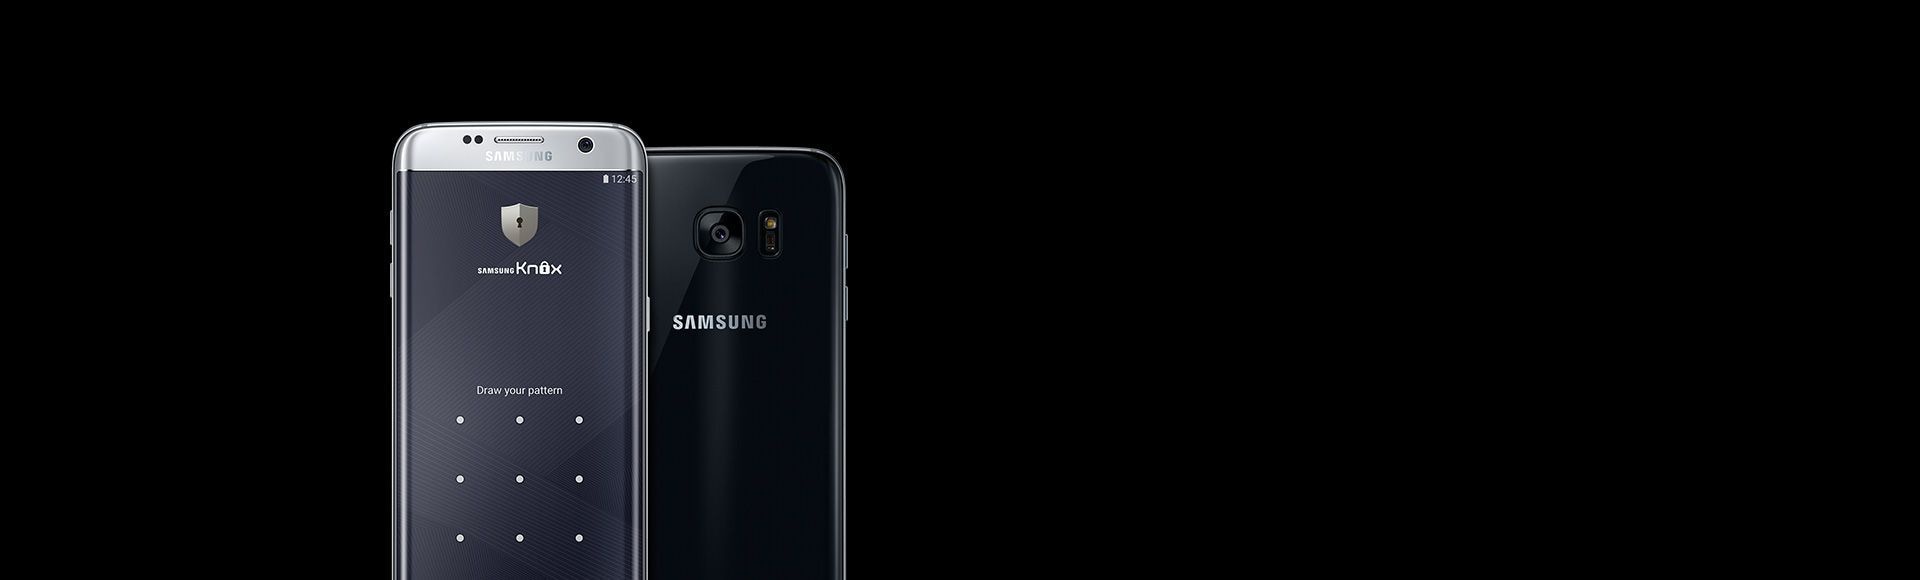 Устройство Galaxy S7 Edge с экраном входа в Samsung Knox (вид спереди и сзади)